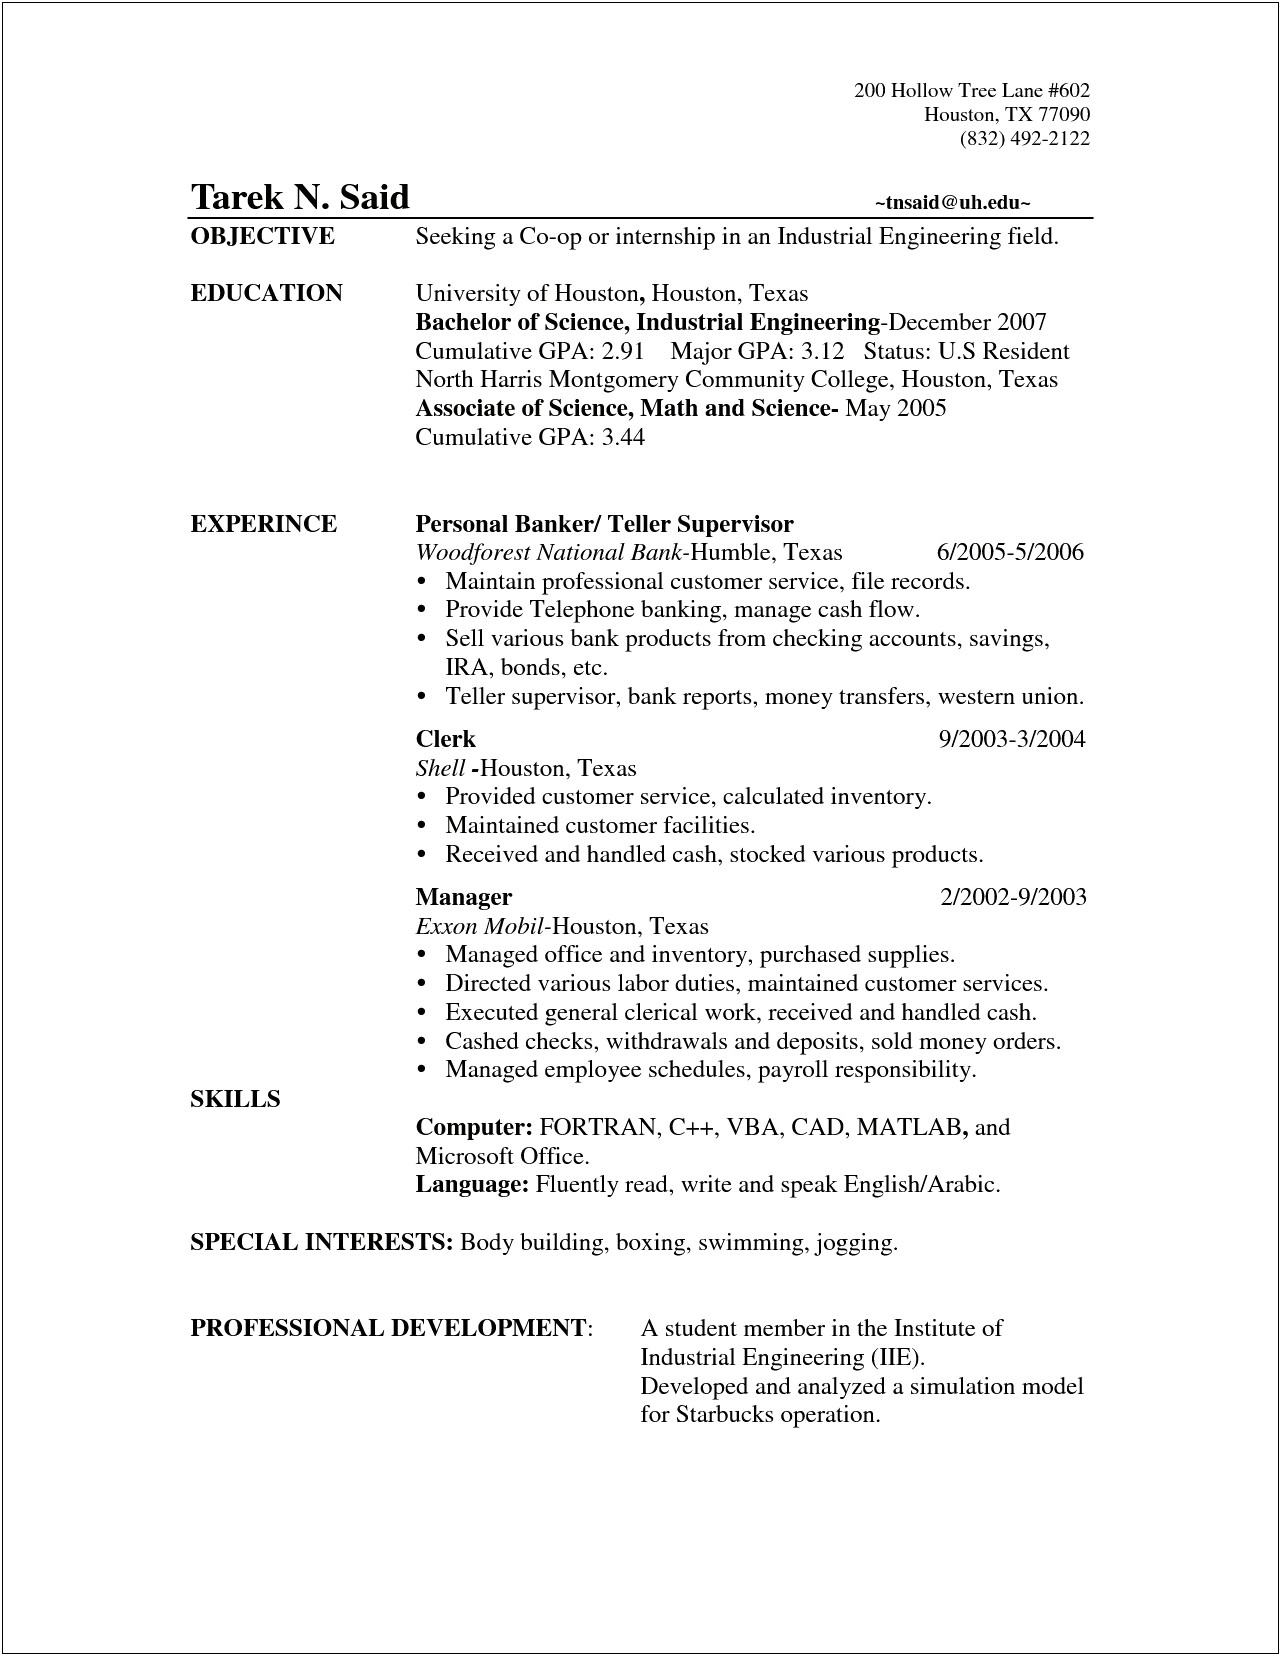 Example Resume For Teller Supervisor